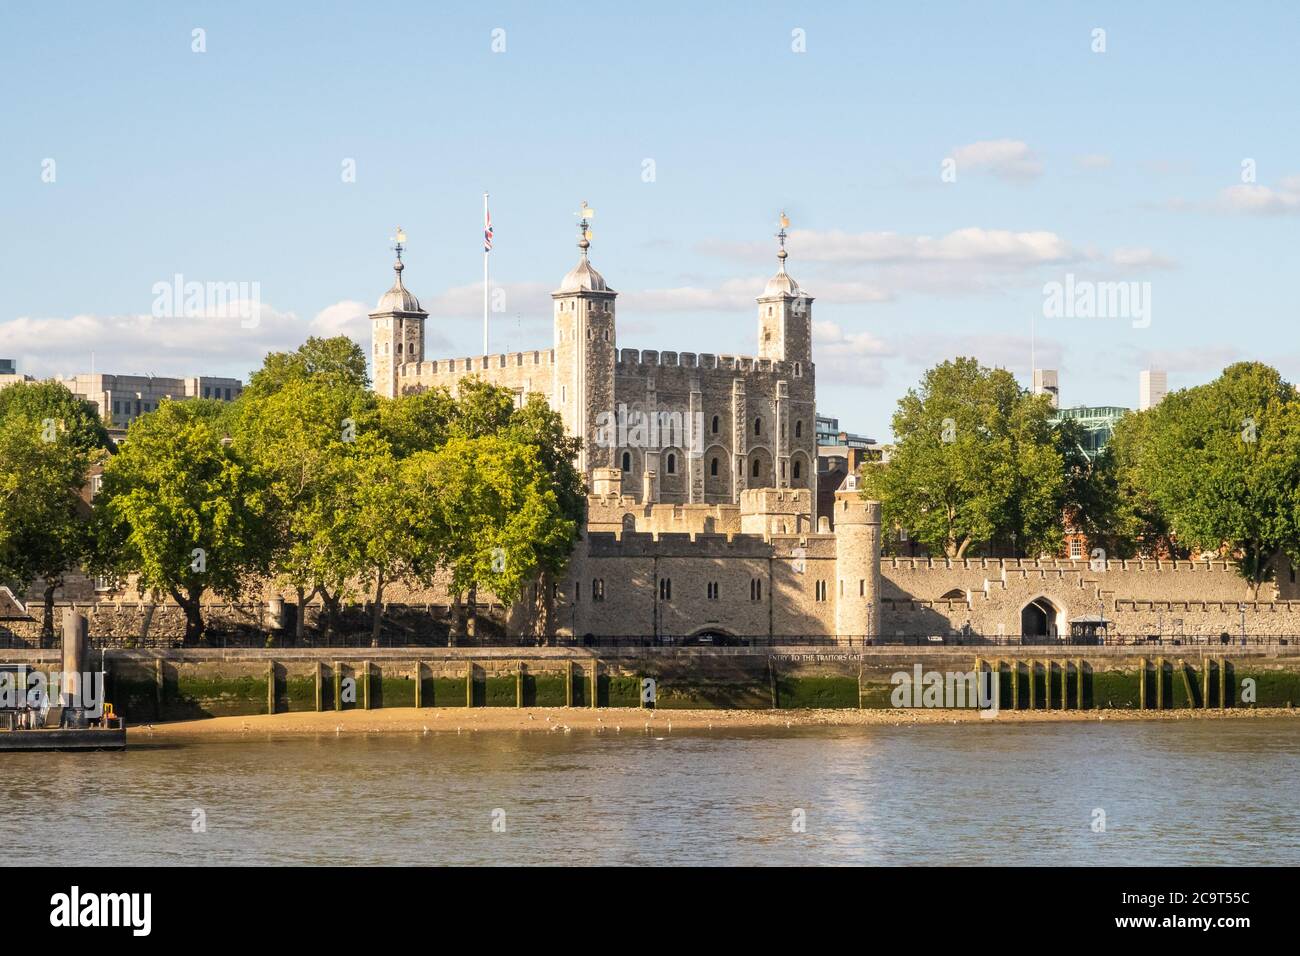 LONDRA, Regno Unito - 20 LUGLIO 2020: La Torre di Londra. Questo edificio e' una popolare attrazione turistica e casa dei gioielli della corona. Foto Stock